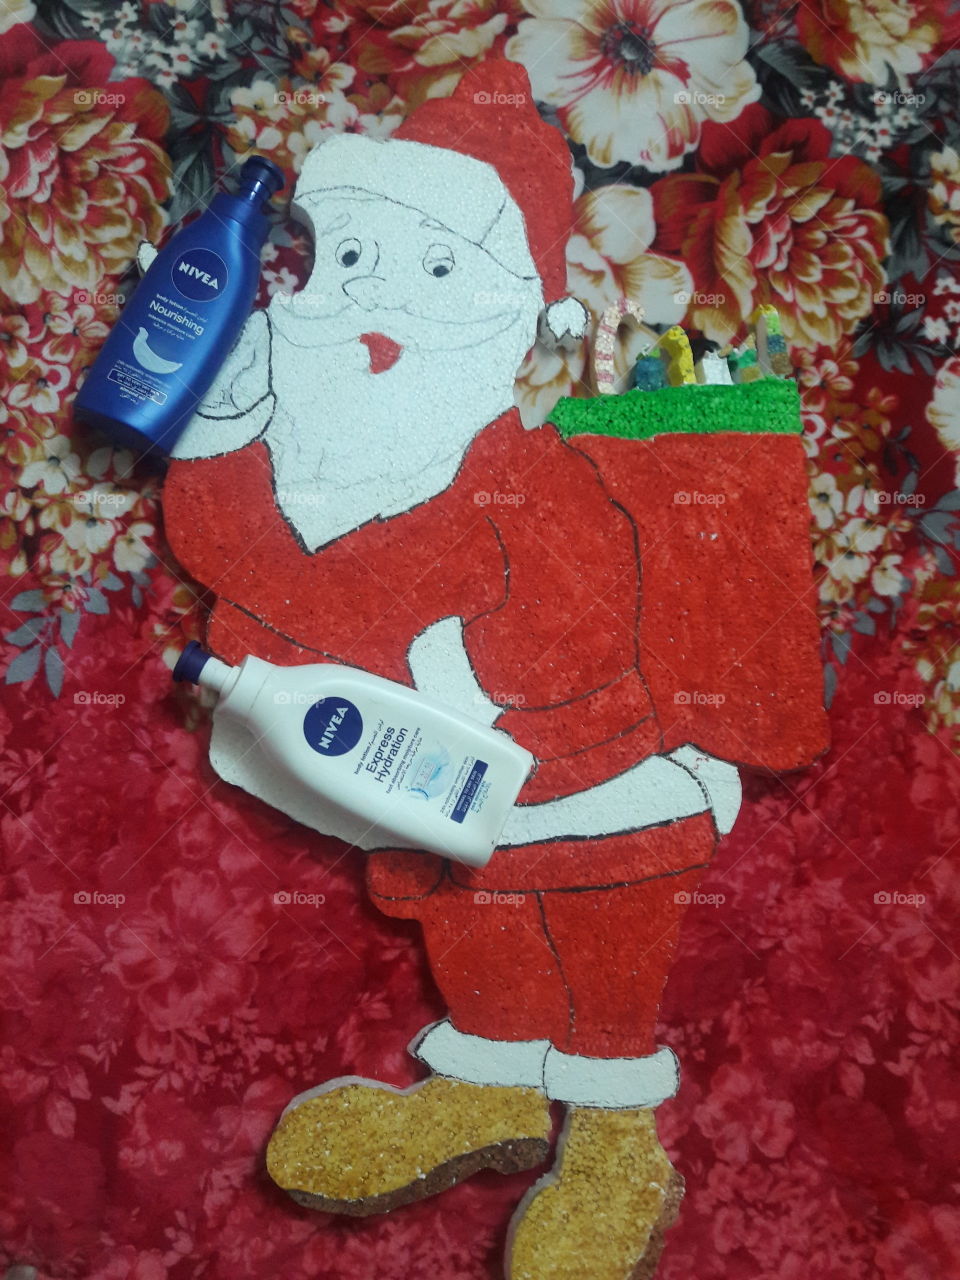 Santa distributing Nivea Products  - Merry Christmas